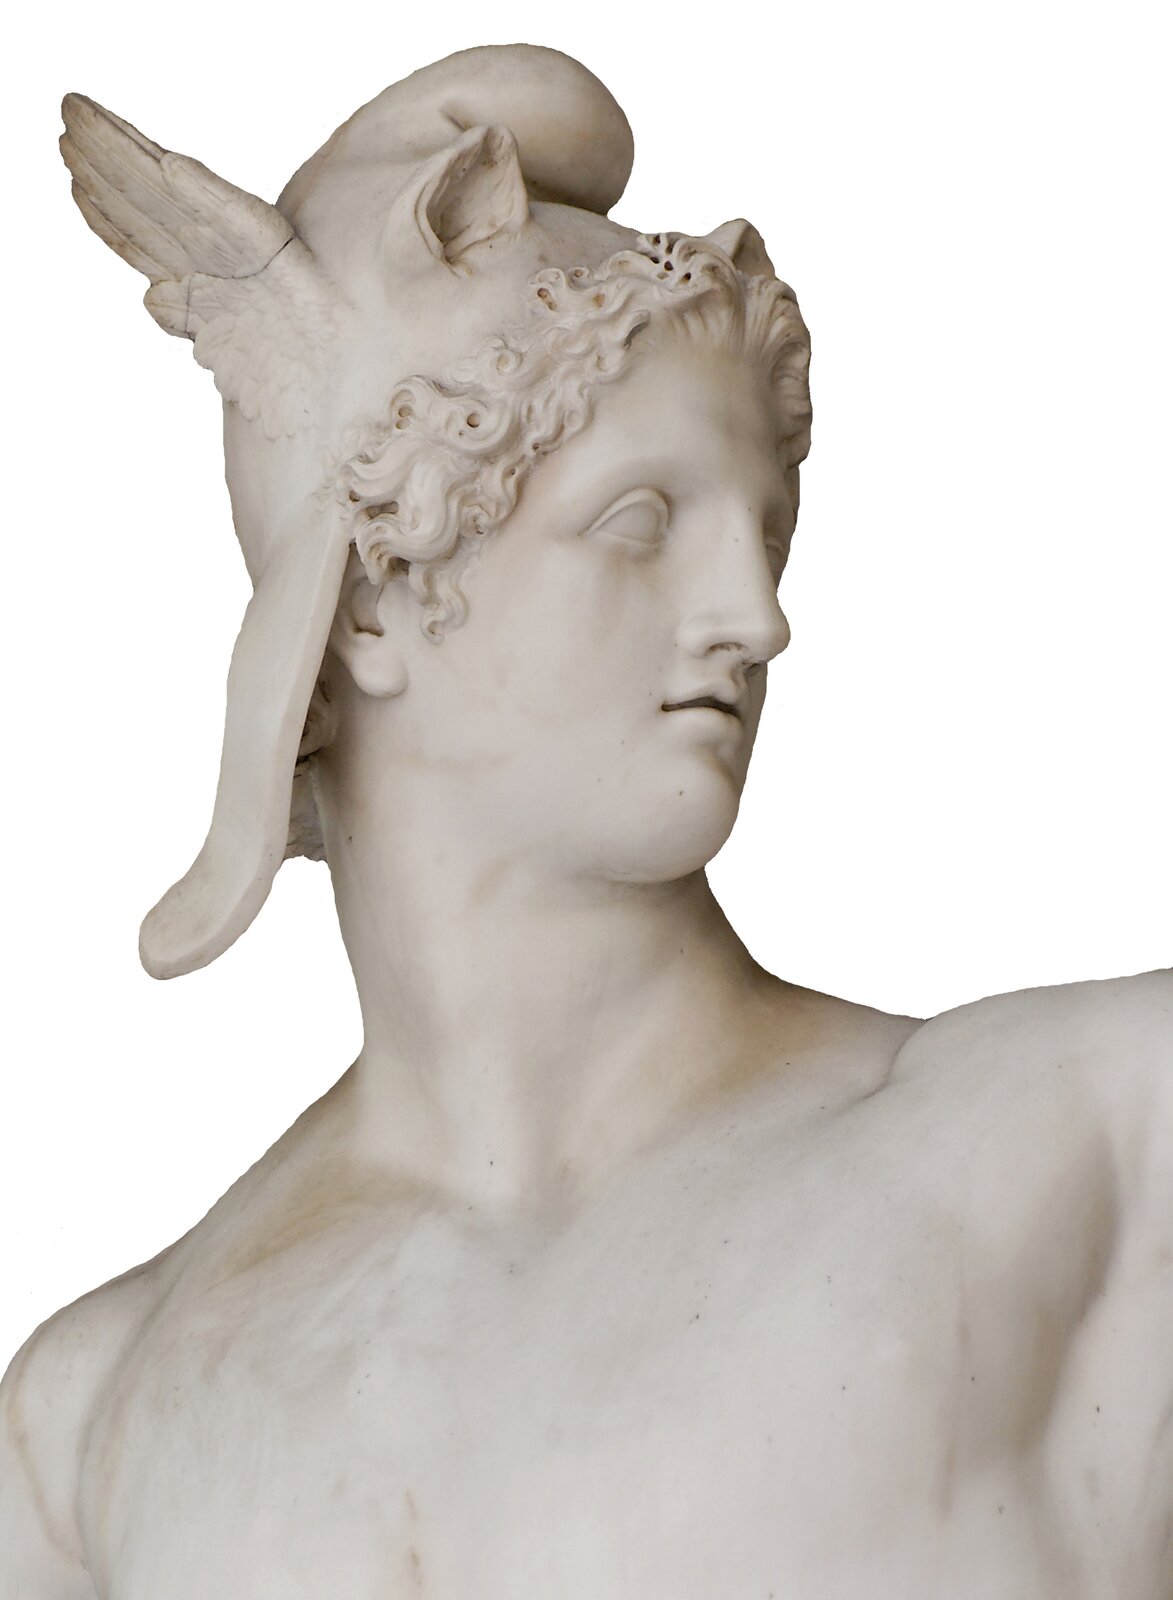 Perseusz Źródło: Antonio Canova, Perseusz, 1800–1801, marmur, Muzea Watykańskie (Muzeum Pio-Clementino), Rzym, licencja: CC BY 3.0.